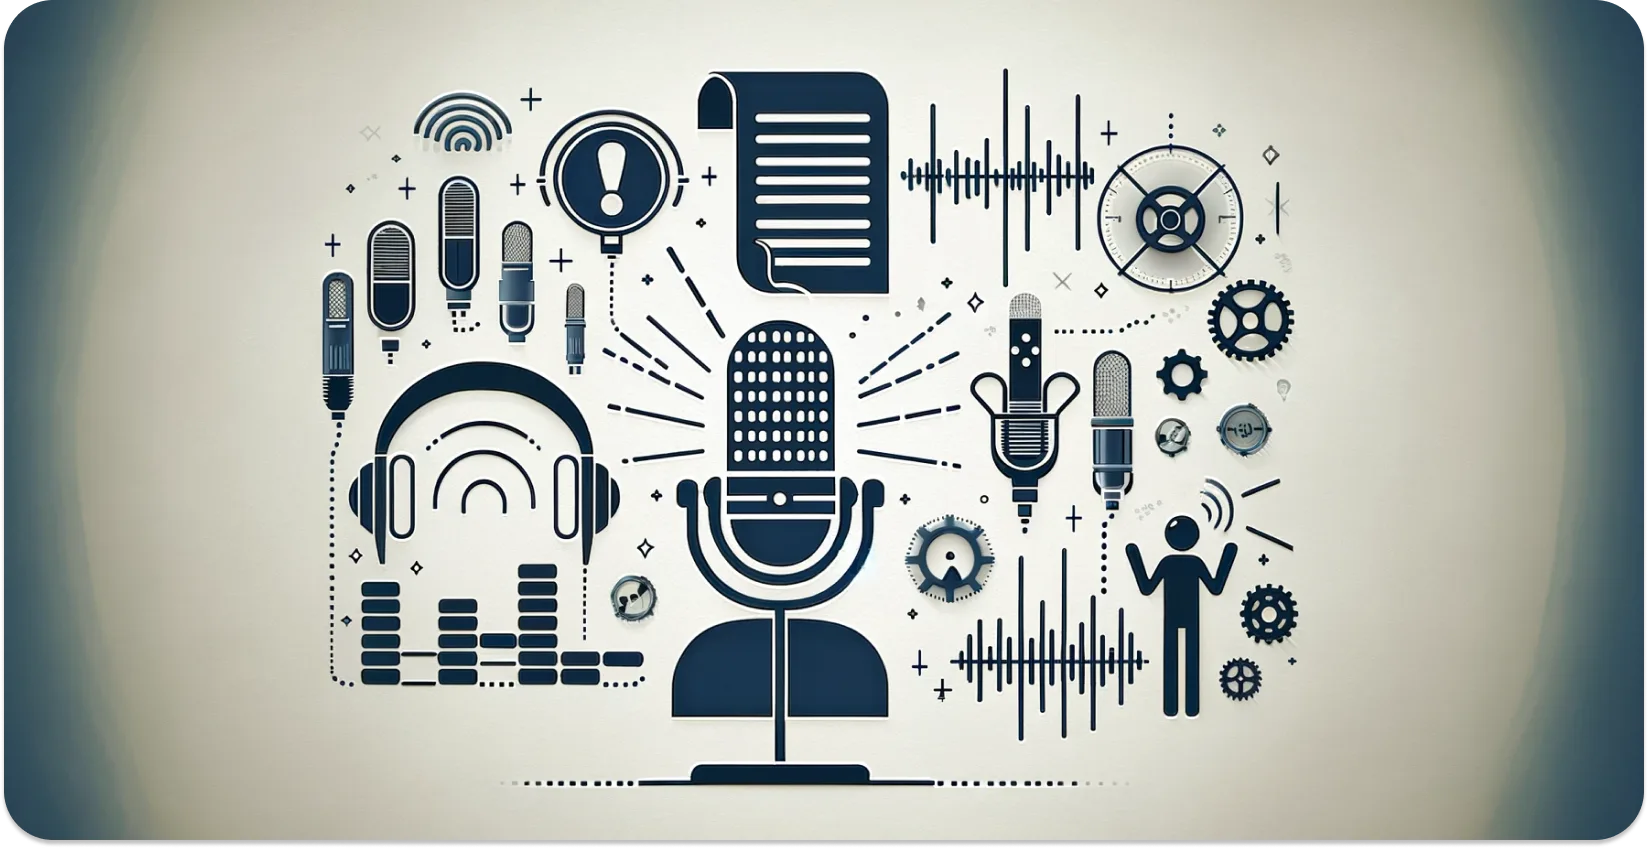 Künstlerische Darstellung von Mikrofonen, Kopfhörern und Schallwellen, die die Audiotranskription symbolisieren.